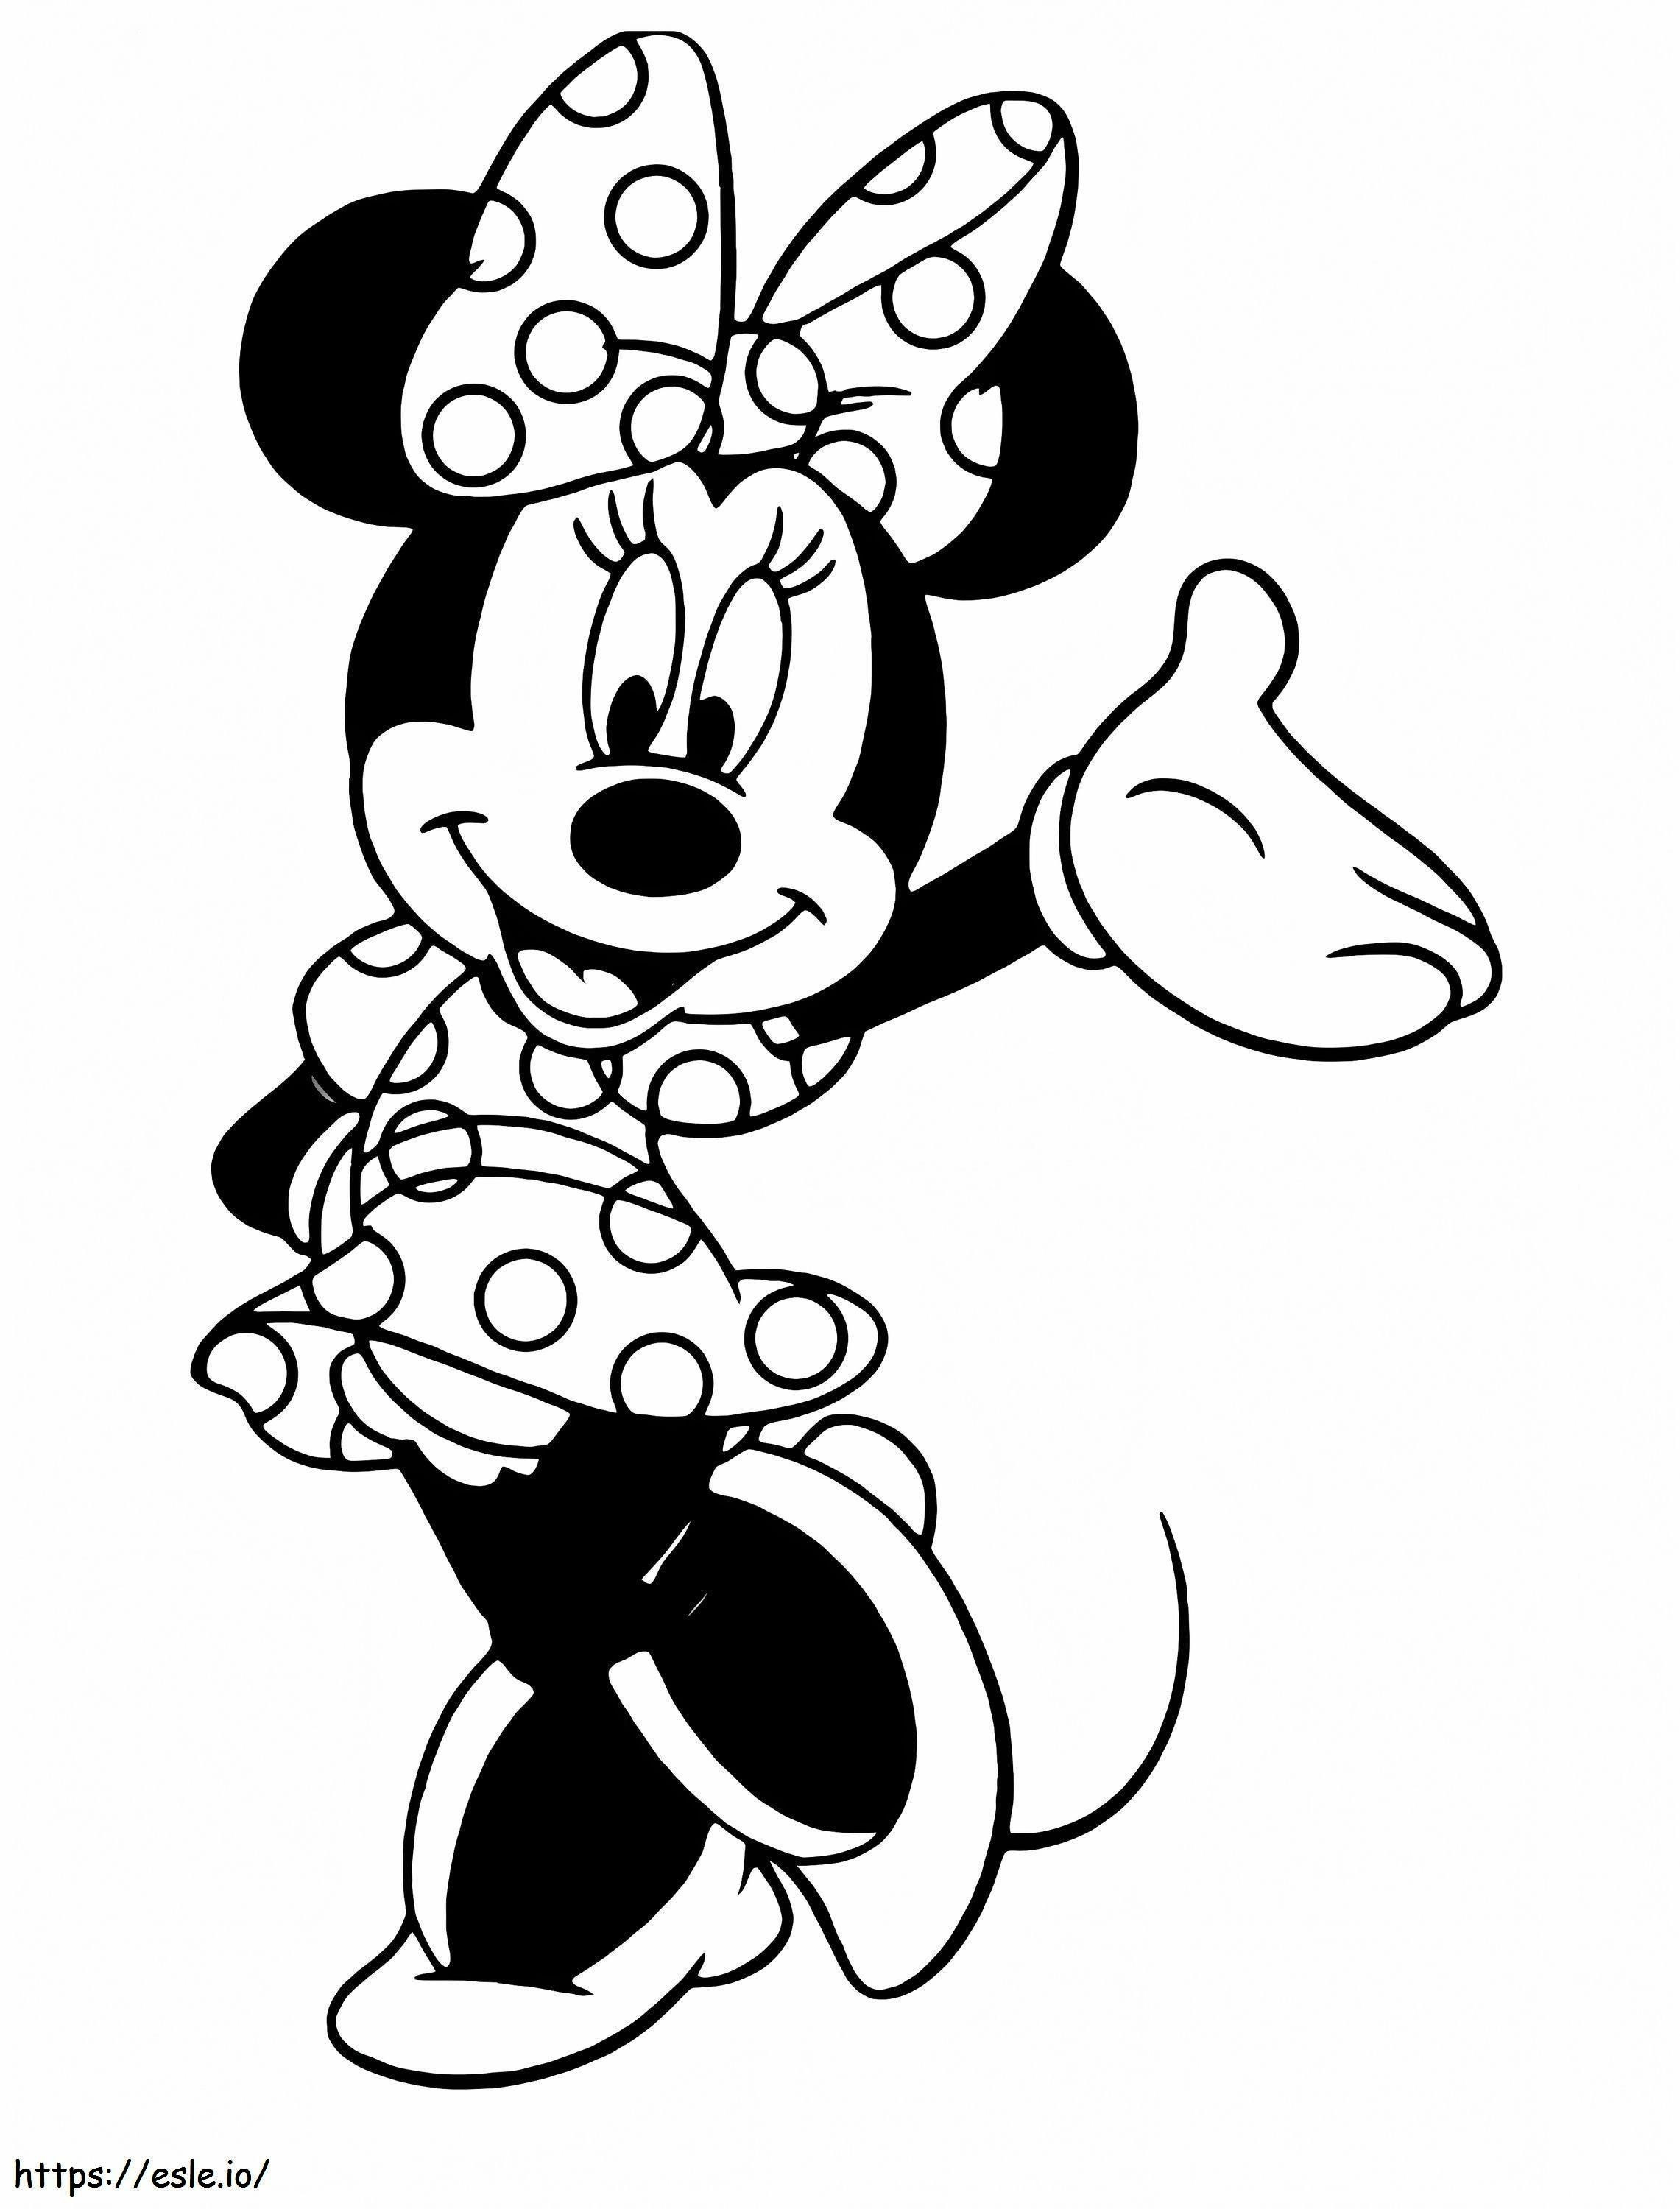 Divertente topolina Minnie da colorare